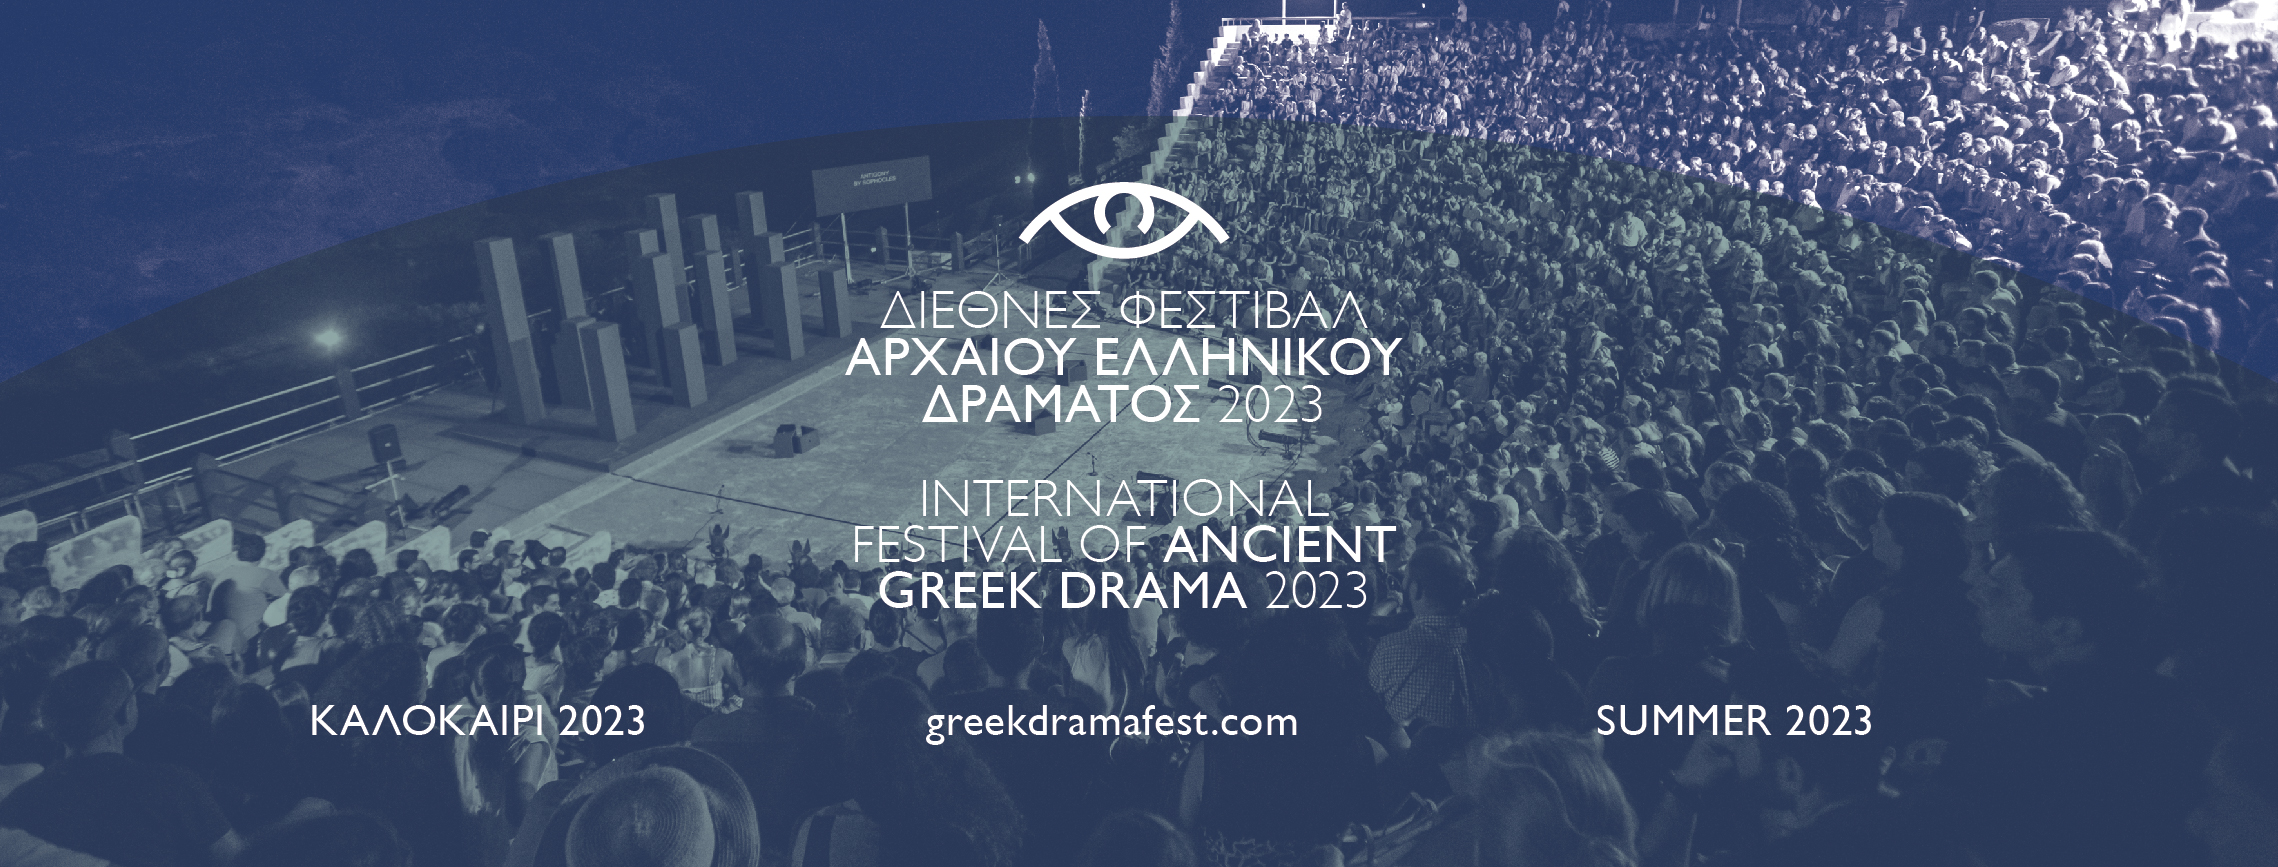 medzinárodný festival antickej gréckej drámy